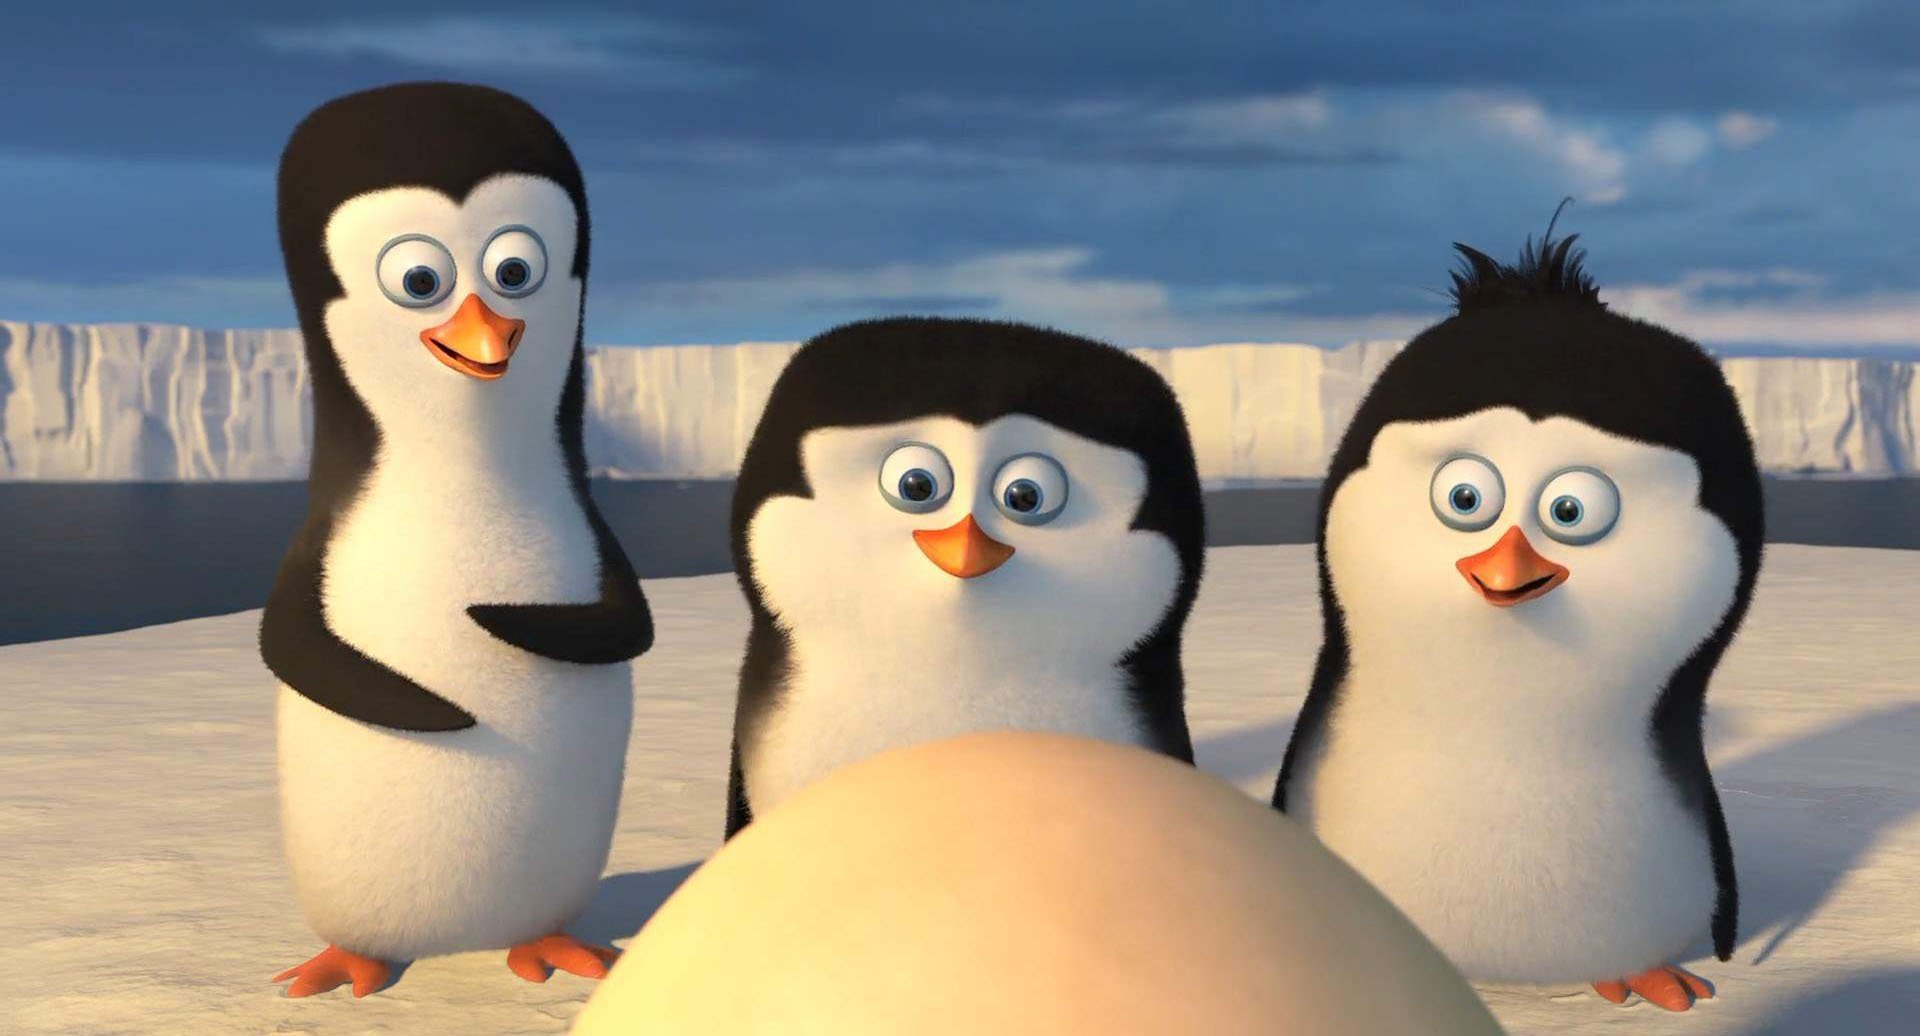 Игра пингвиненок. Пингвины Мадагаскара. Пингвины Мадагаскара 2. Penguins of Madagascar пингвины Мадагаскара 2014. Шкипер Ковальский рядовой и Рико.